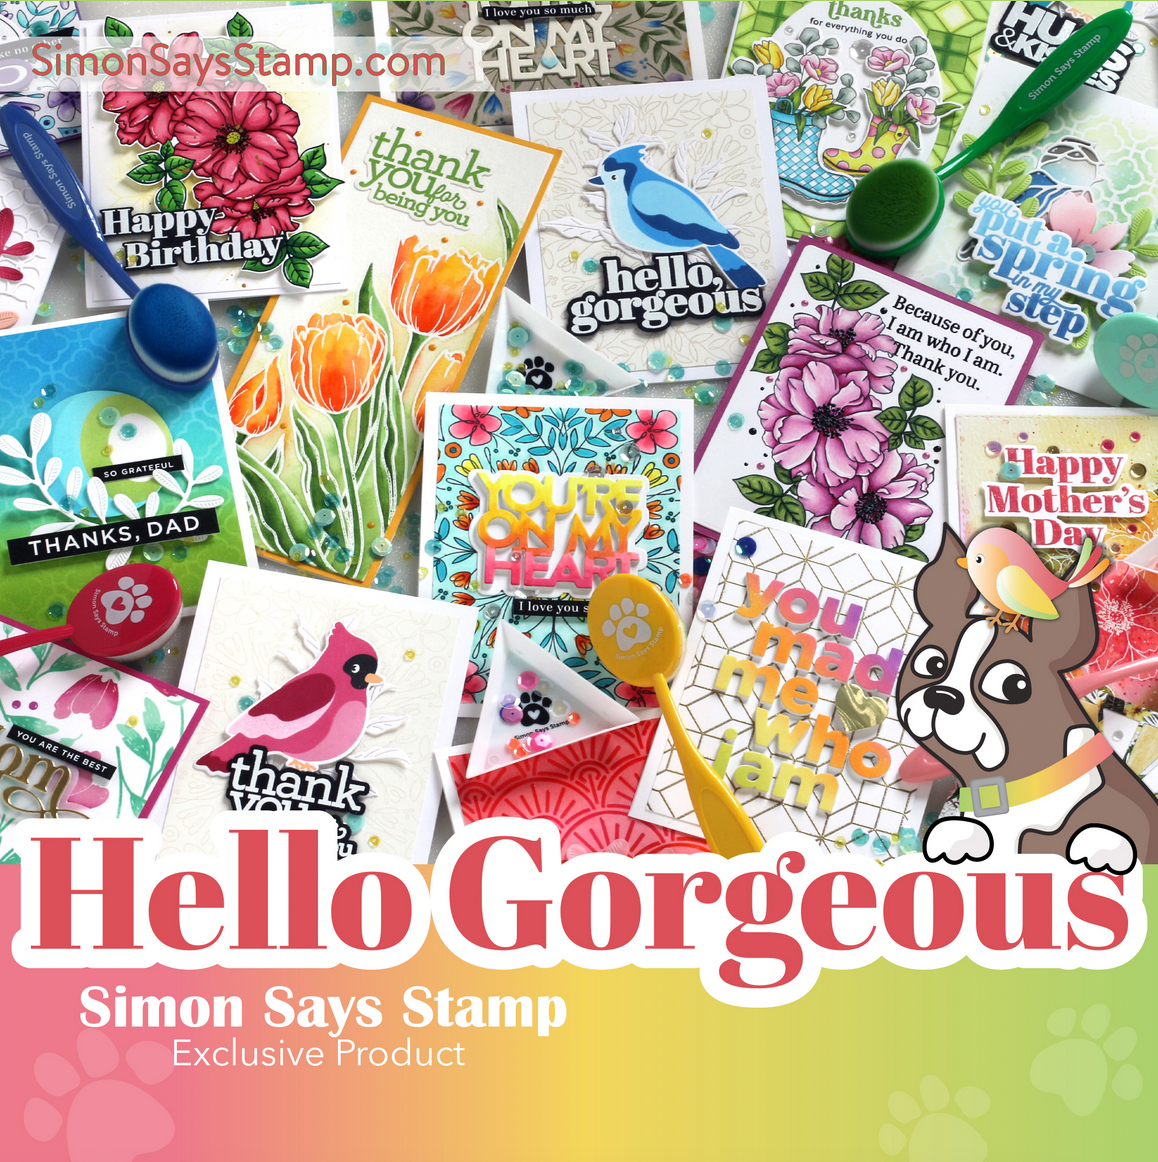 Simon Says Stamp, Hello Gorgeous